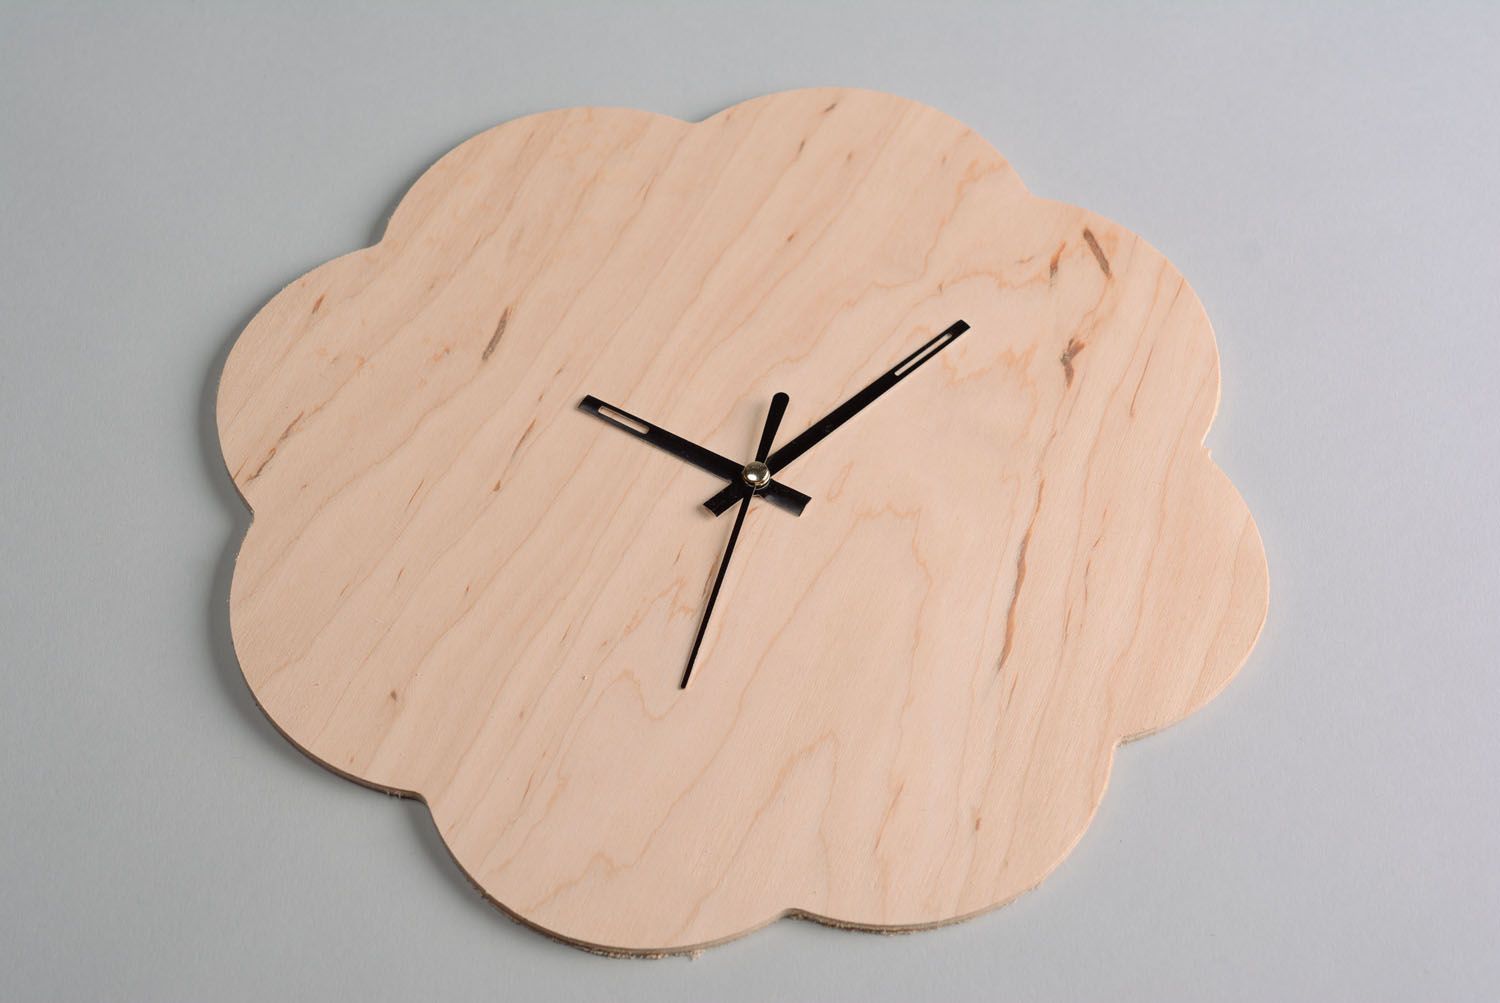 Base de madera para el reloj Flor foto 1